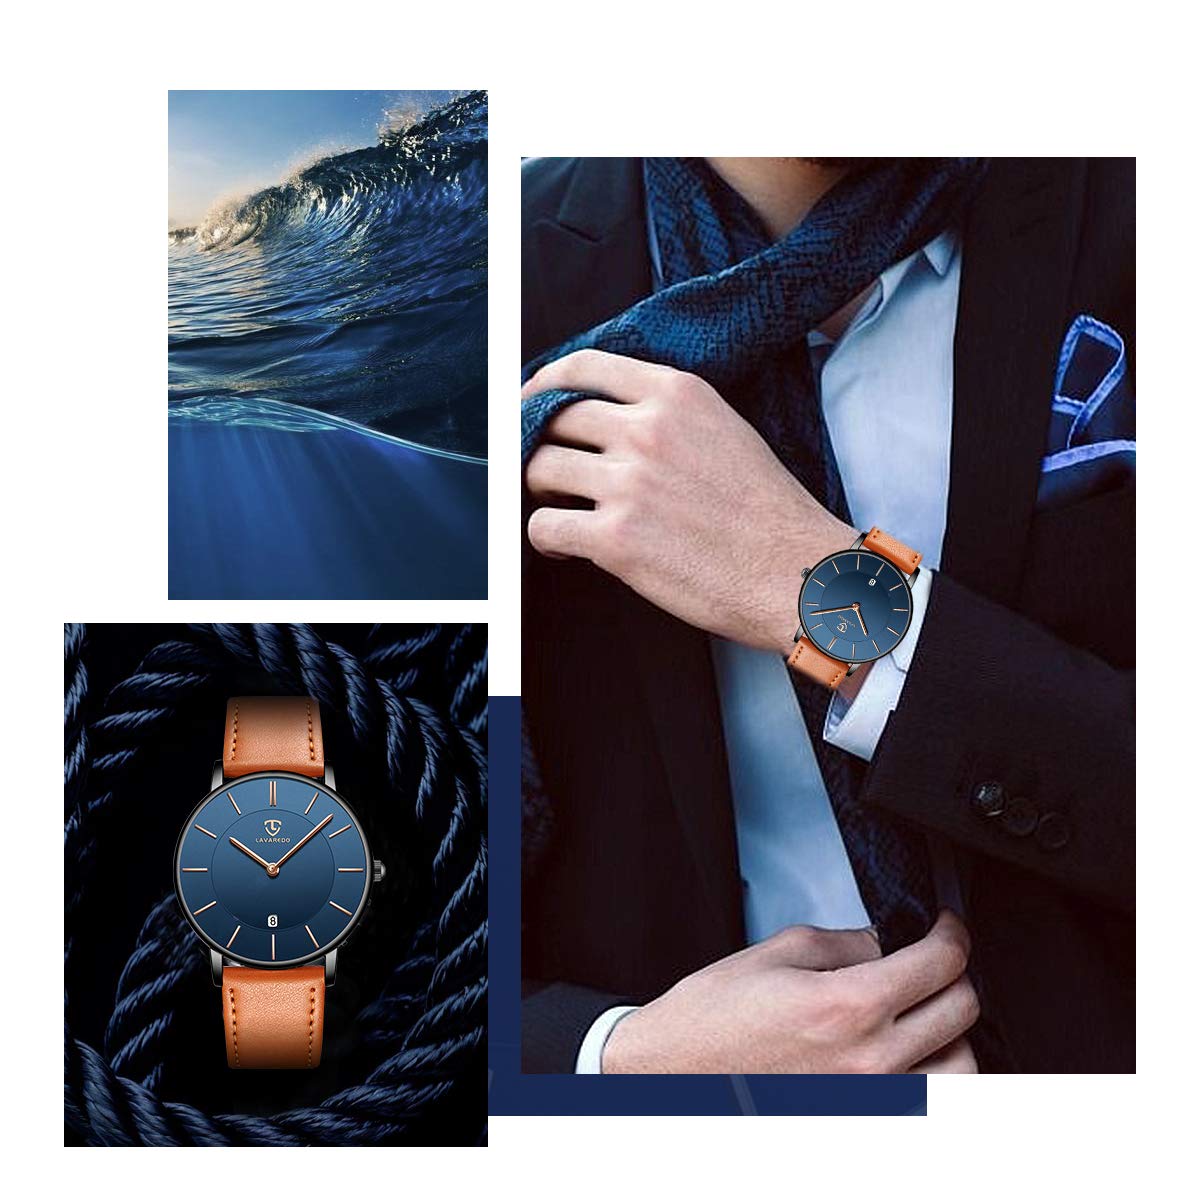 BEN NEVIS Uhren,Herren Uhr Flache Analog Quarz Datumsanzeiger Klassisch Mode Wasserdicht Armbanduhr mit Leder Armband